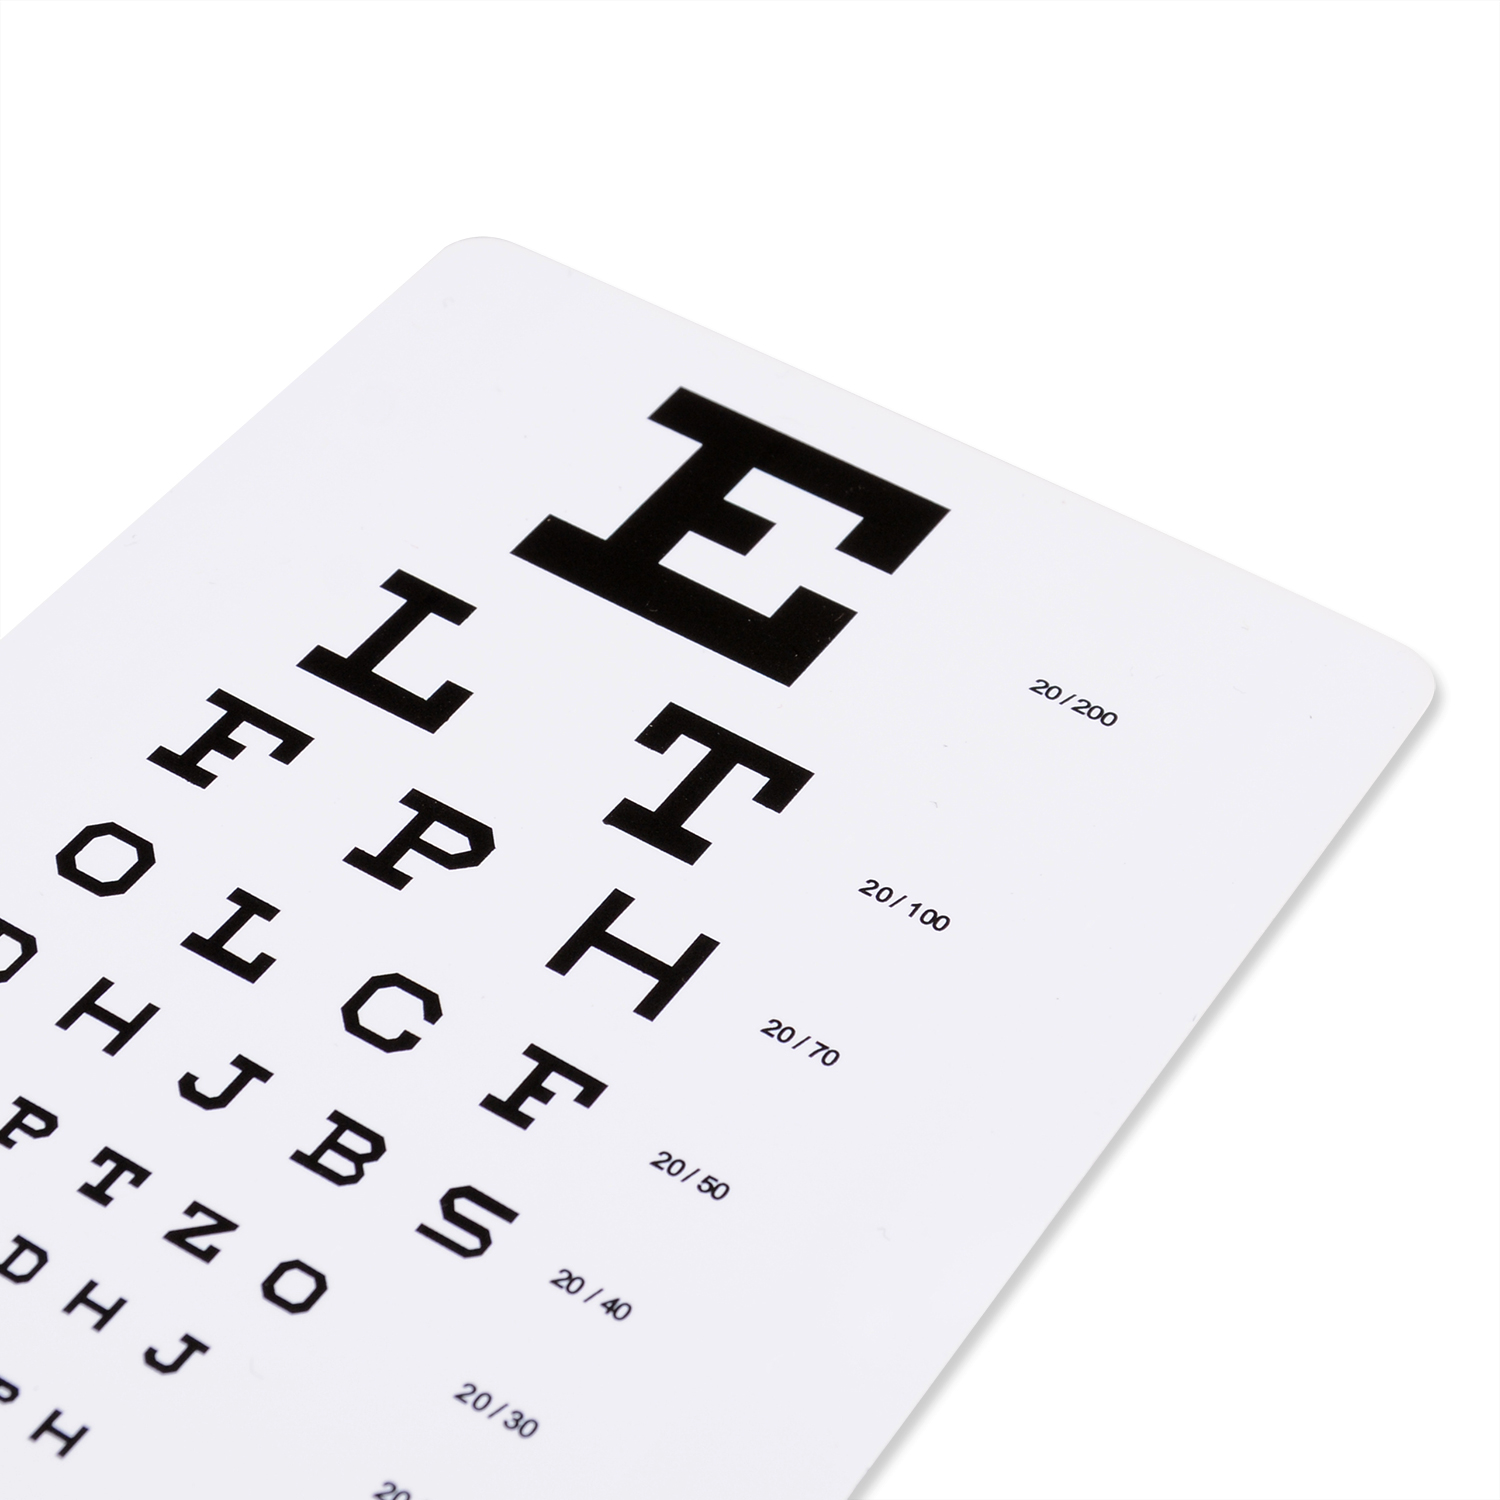 custom-printable-snellen-eye-test-chart-6-feet-plastic